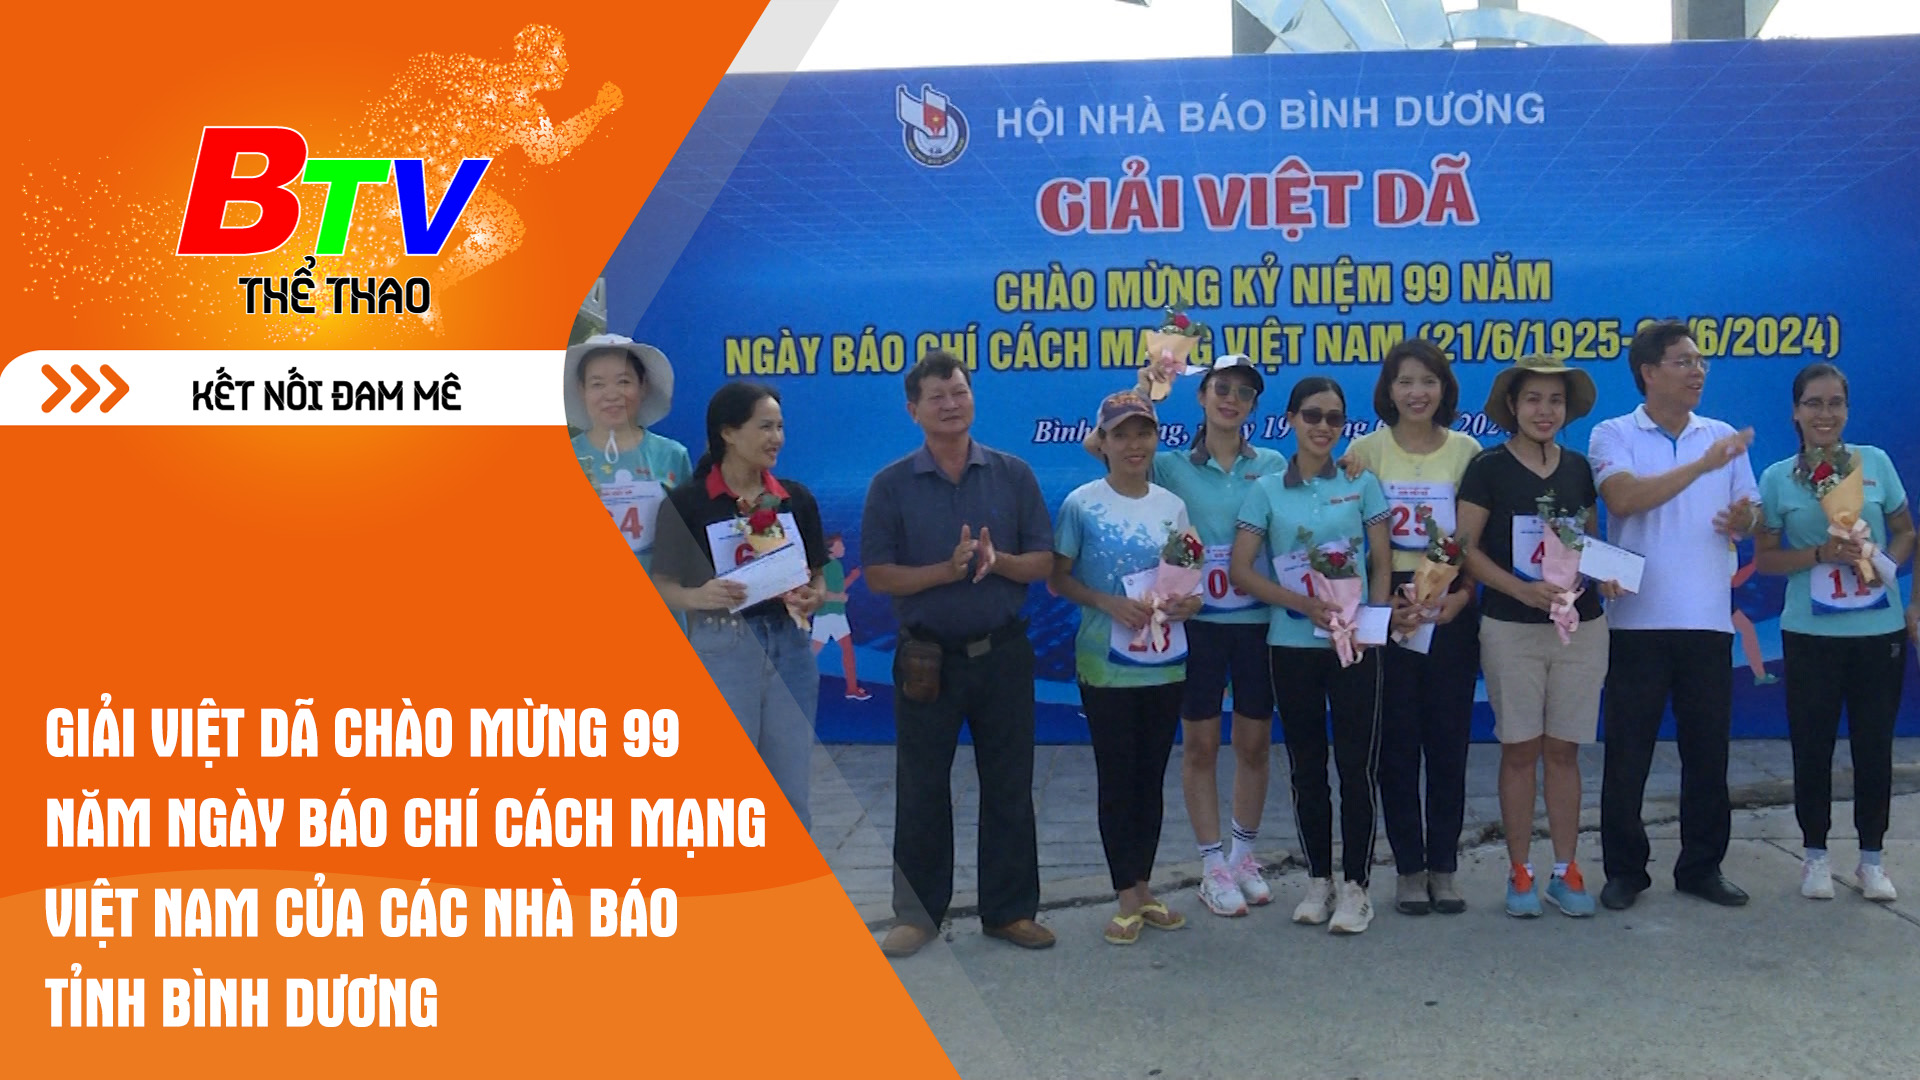 Giải Việt dã chào mừng 99 năm ngày Báo chí cách mạng Việt Nam của các nhà báo tỉnh Bình Dương | Tin Thể thao 24h